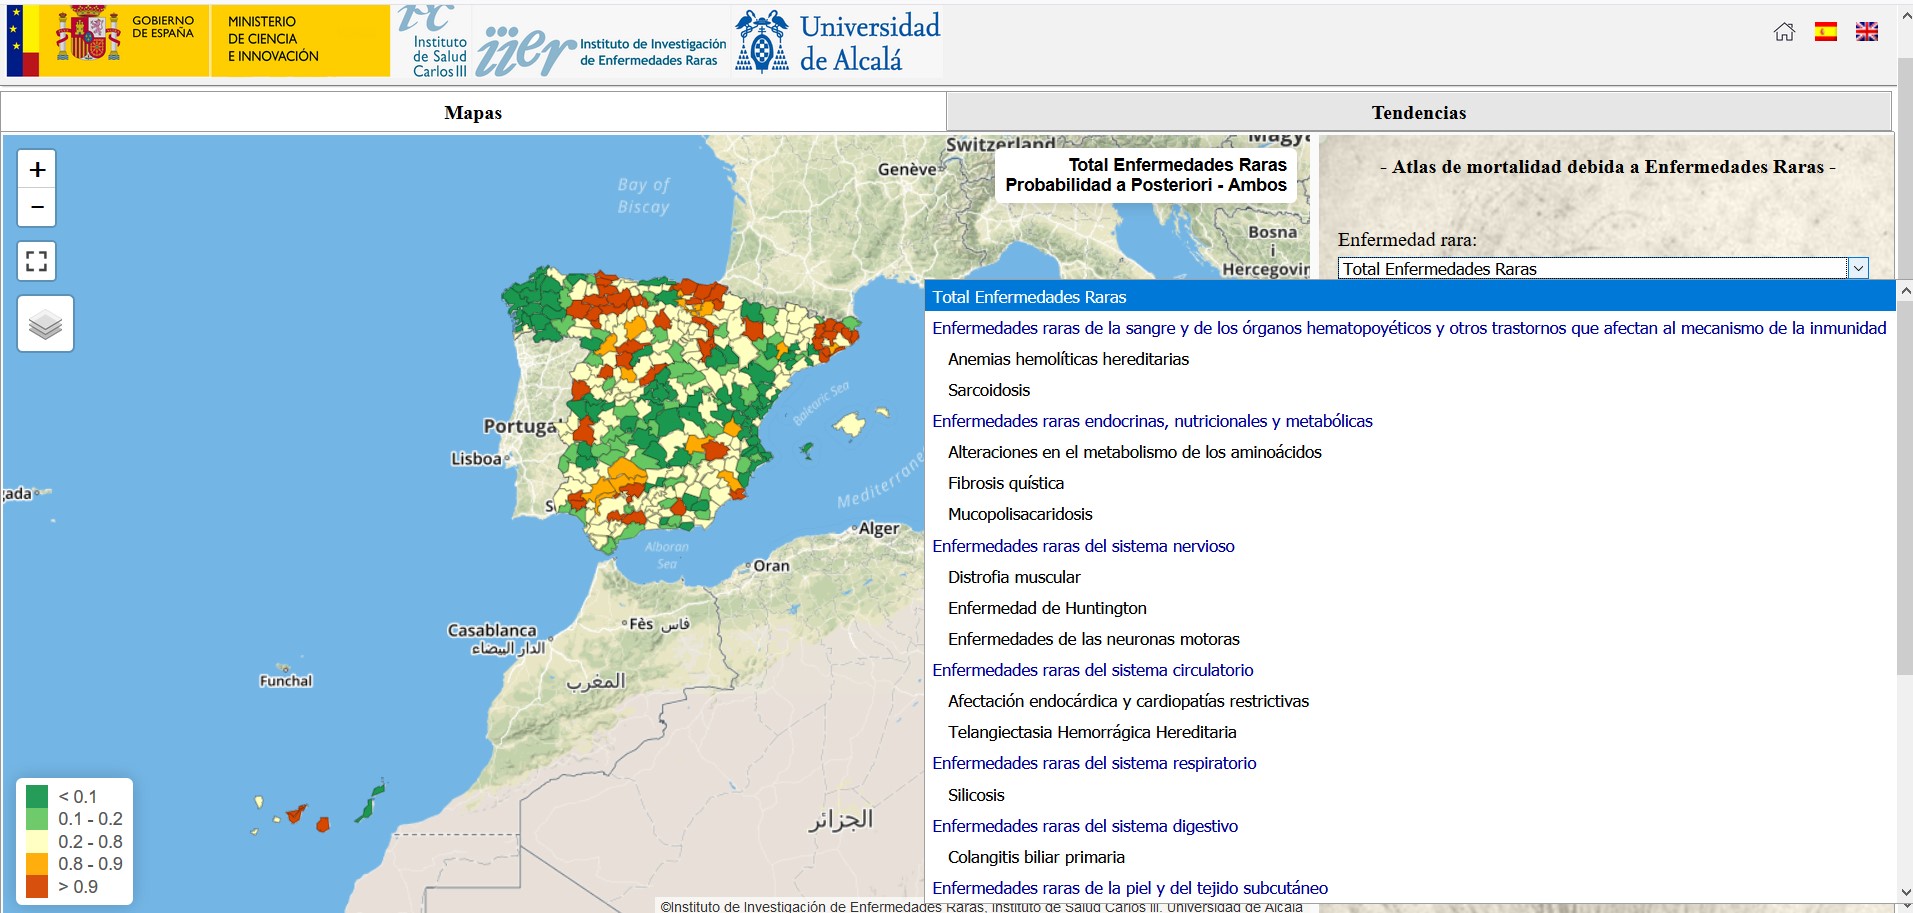 Atlas de Mortalidad debida a enfermedades raras en España